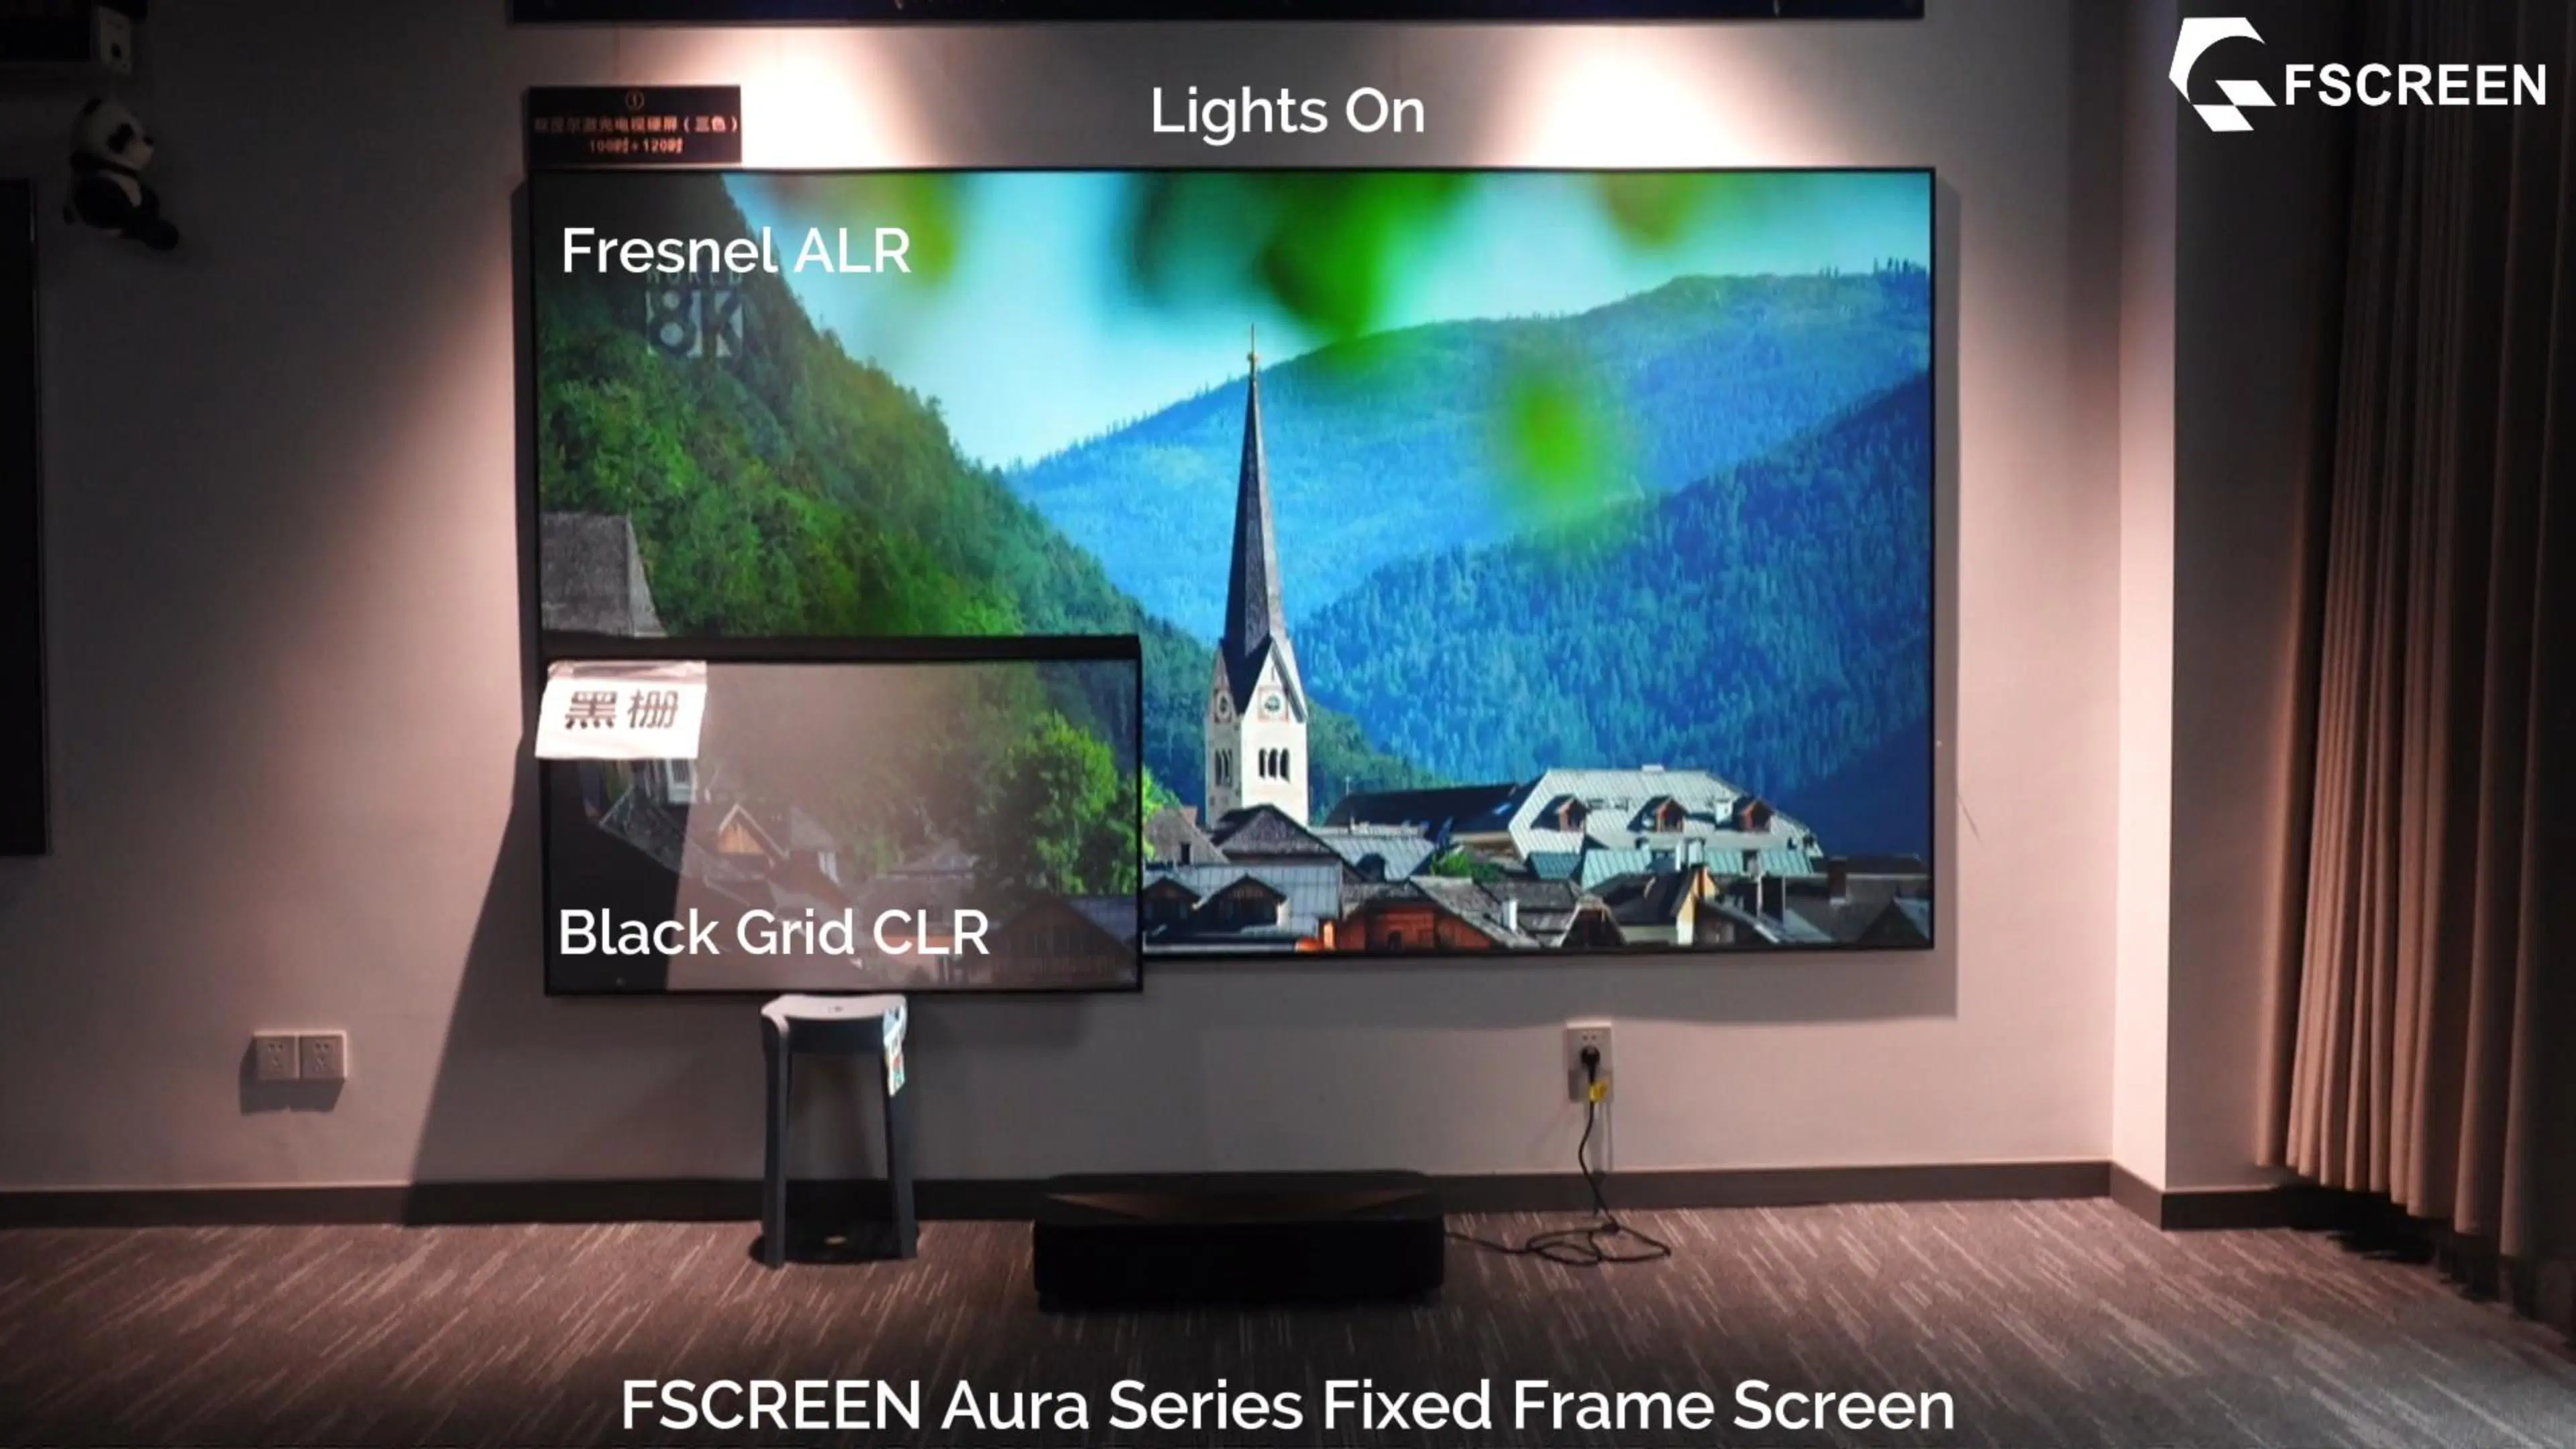 شاشة عرض FScreen Aura Series بحجم 120 بوصة من طراز ALR من طراز Ultra أجهزة تلفاز ليزر بروجيكتور ذات إسقاط قصير